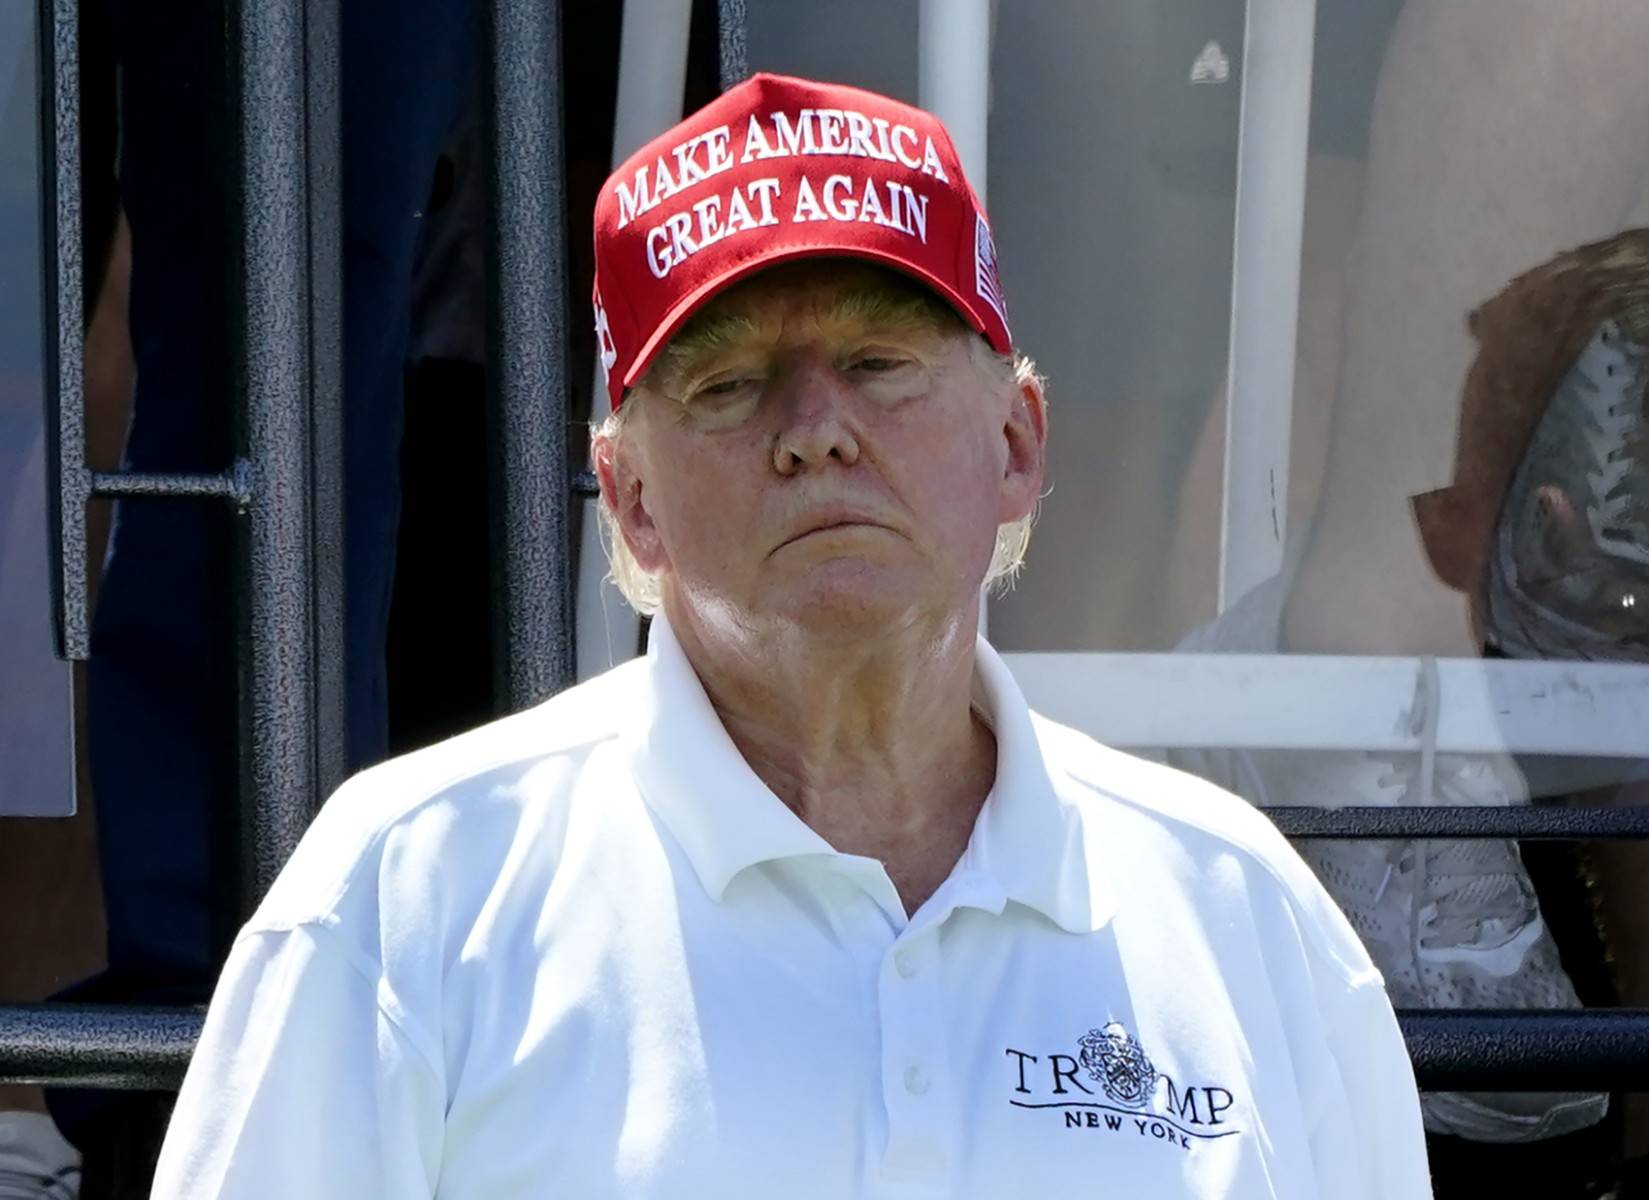 Mężczyzna, Donald Trump, w czerwonej czapce z napisem Make America Great Again